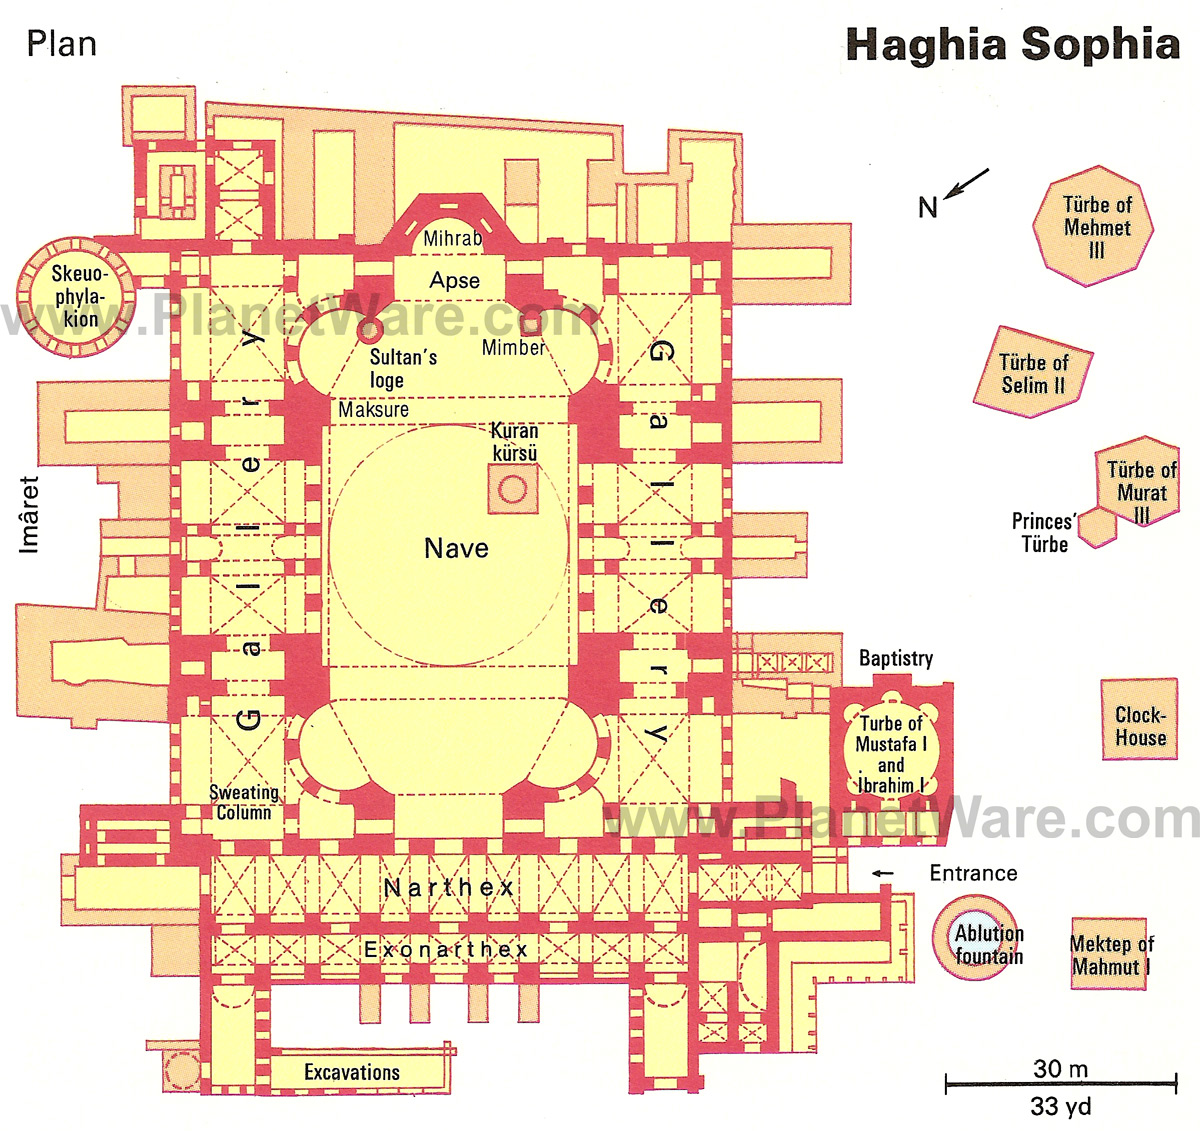 HagiaSophia Ground Floor